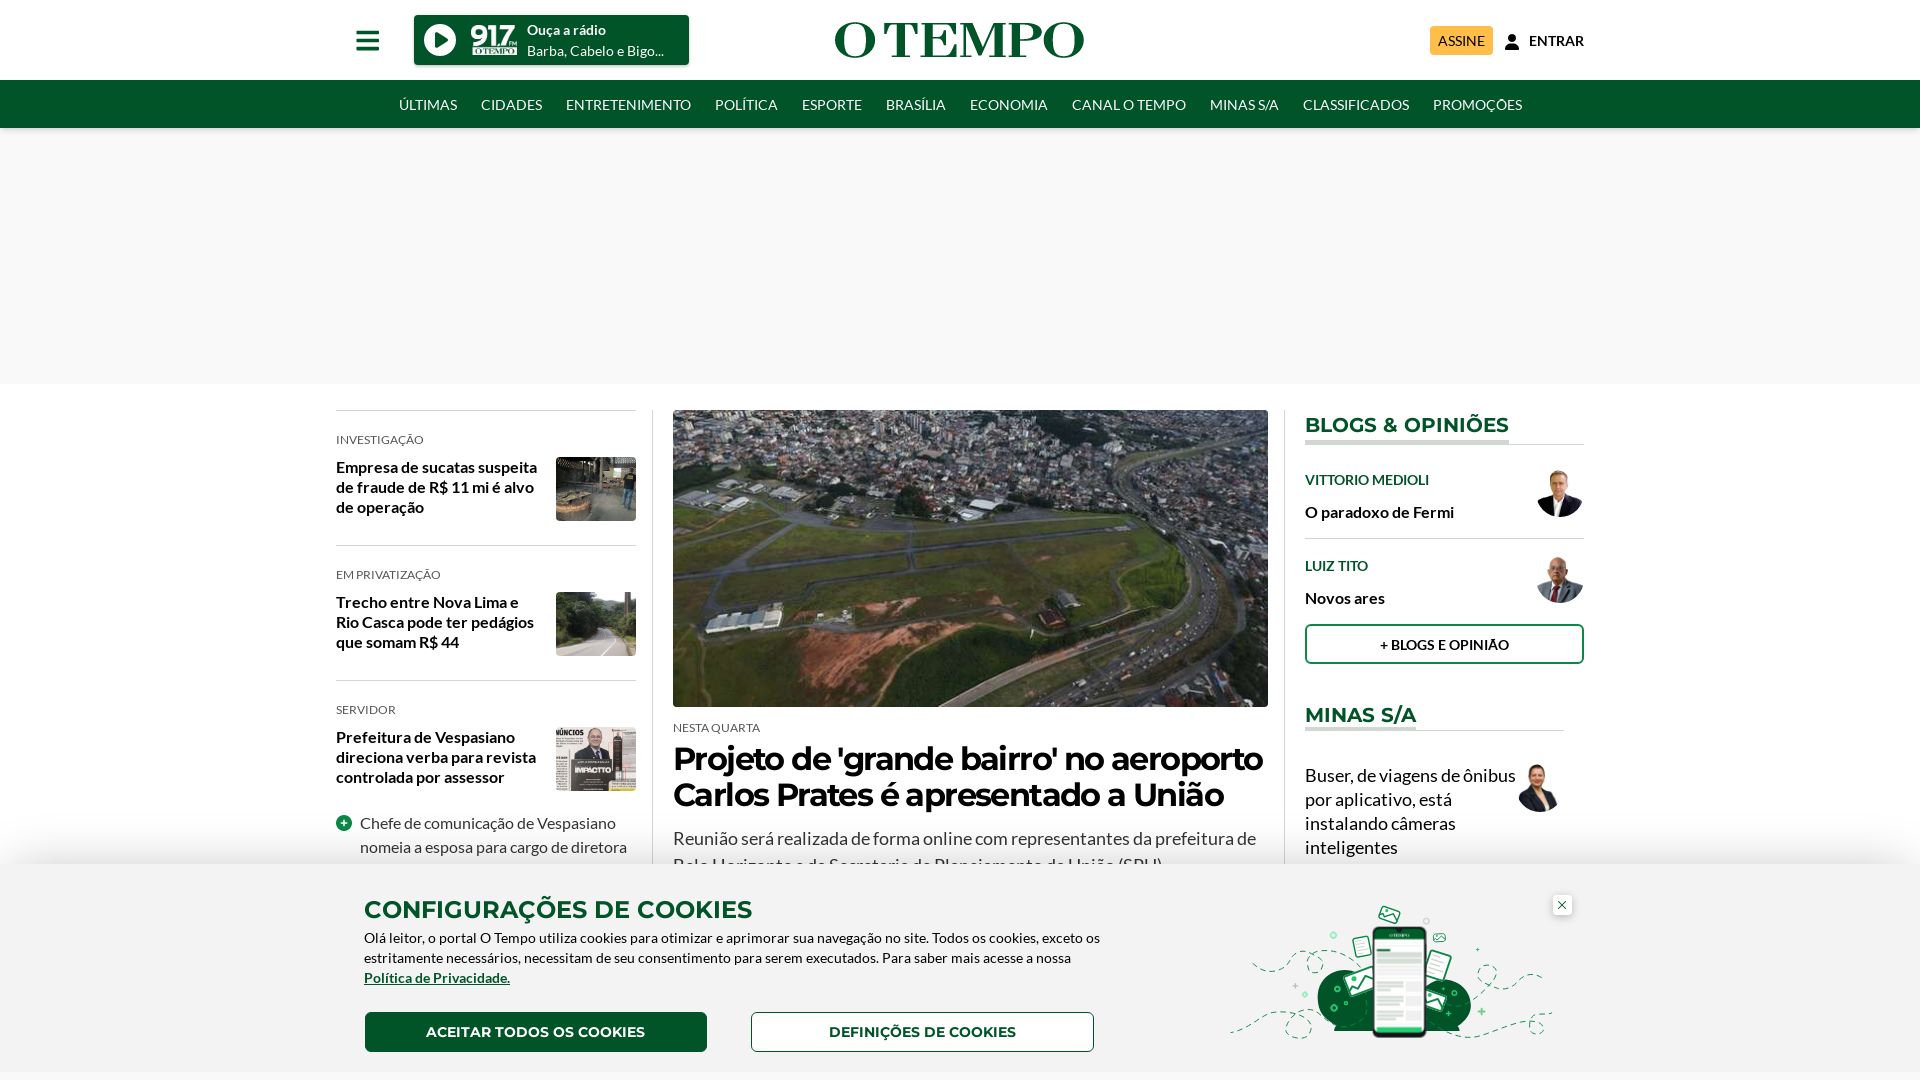 Estado web otempo.com.br está   ONLINE